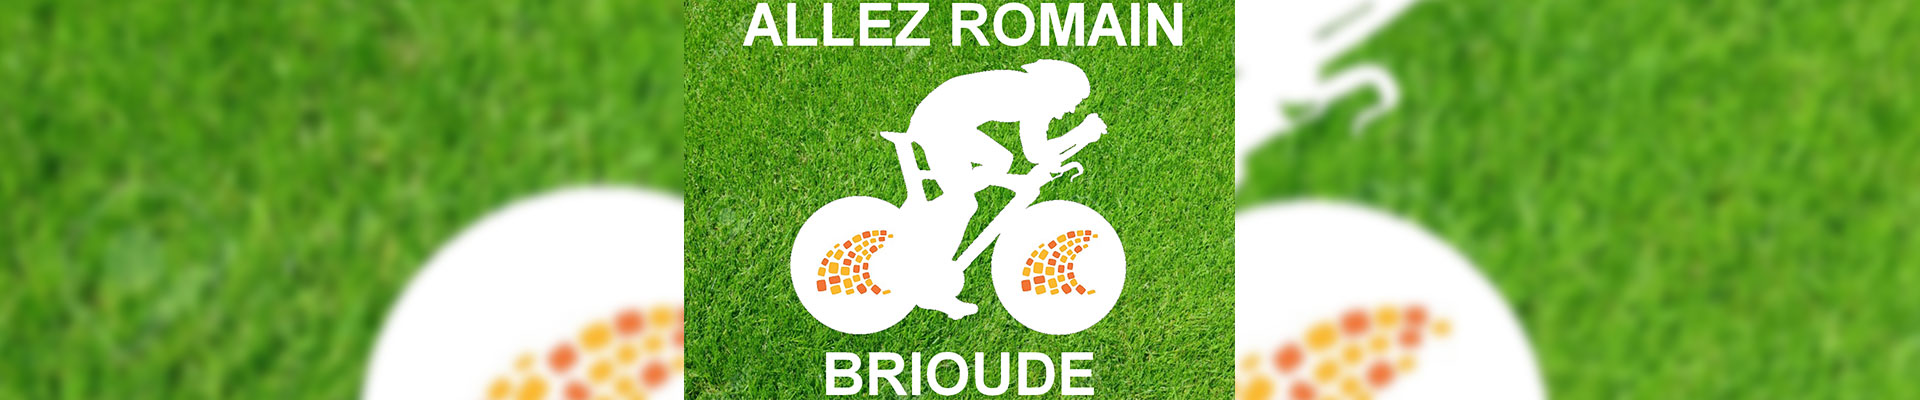 Logotipo Monumental Tour de France, comunicação, comunidade, empresa